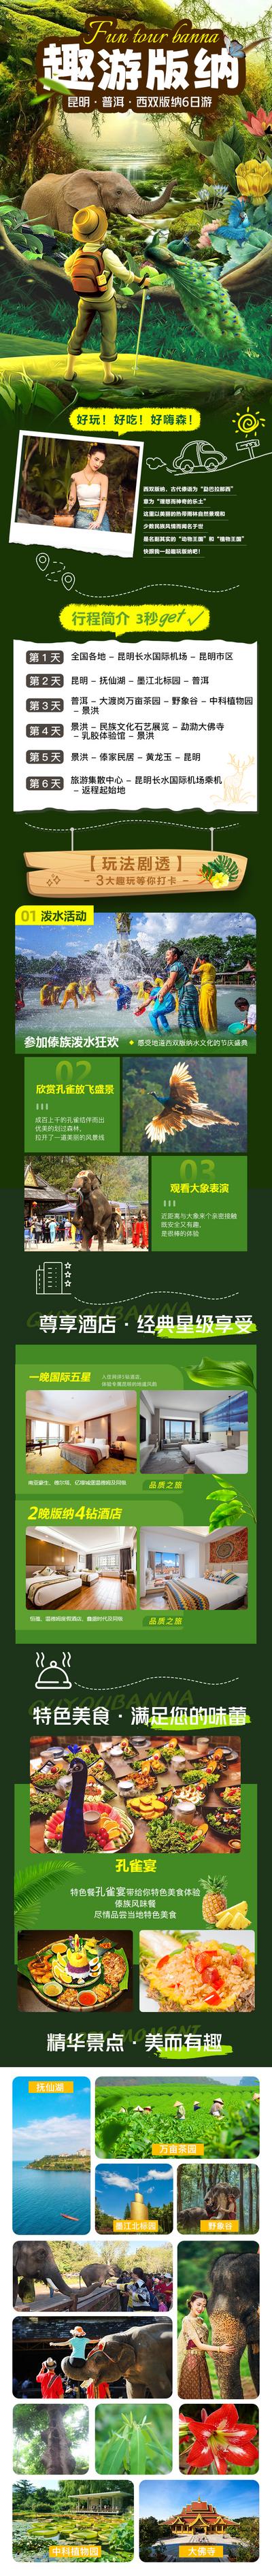 南门网 广告 电商 长图 西双版纳 旅游 森林 趣味 孔雀 大象